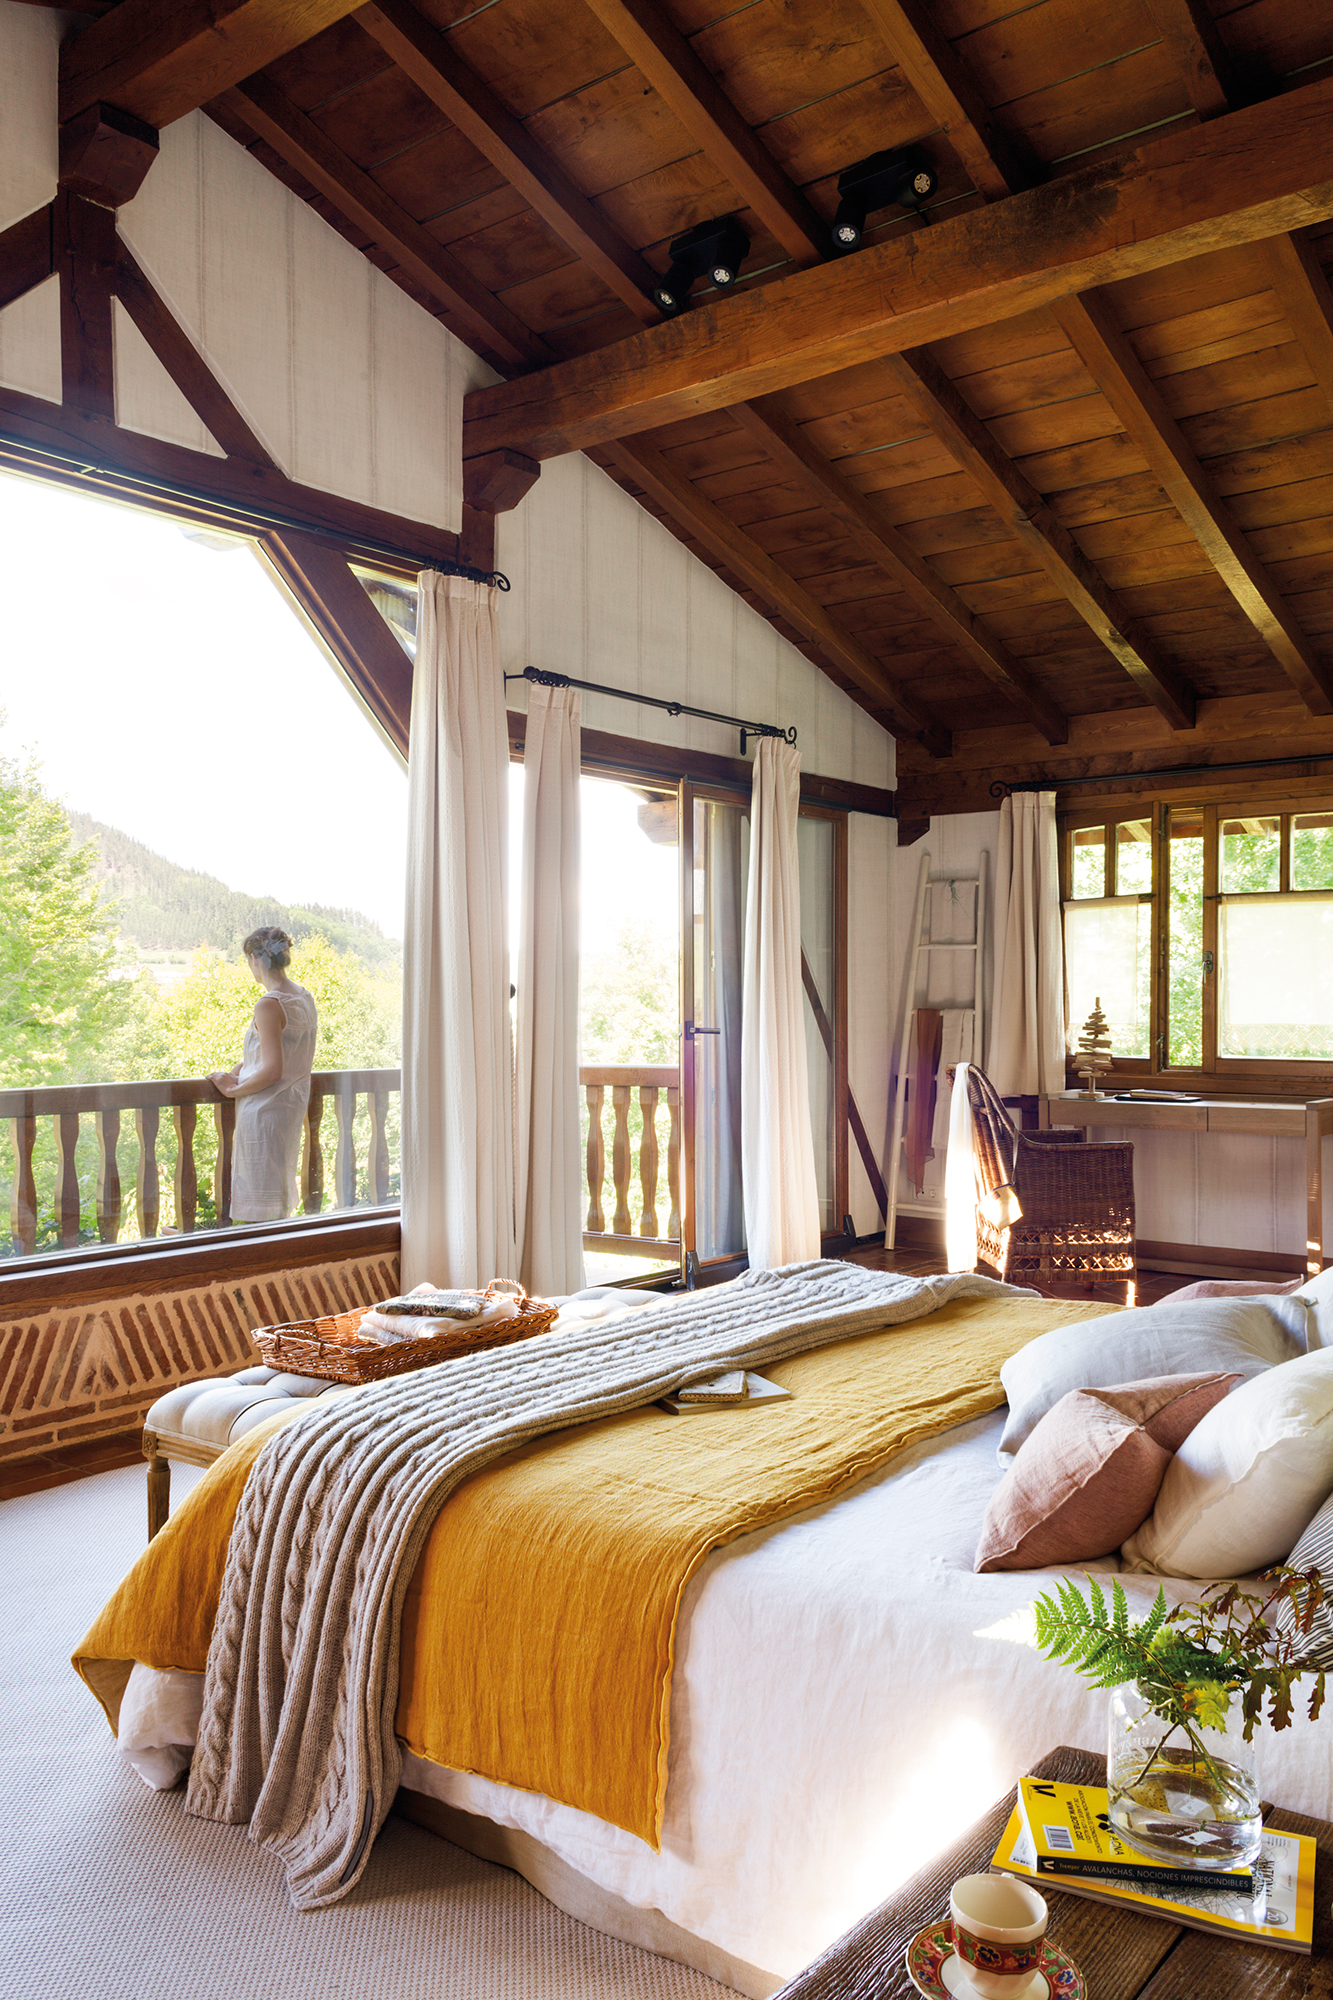 Dormitorio rústico con techos abuhardillados de madera y ropa de cama blanca y mostaza. 